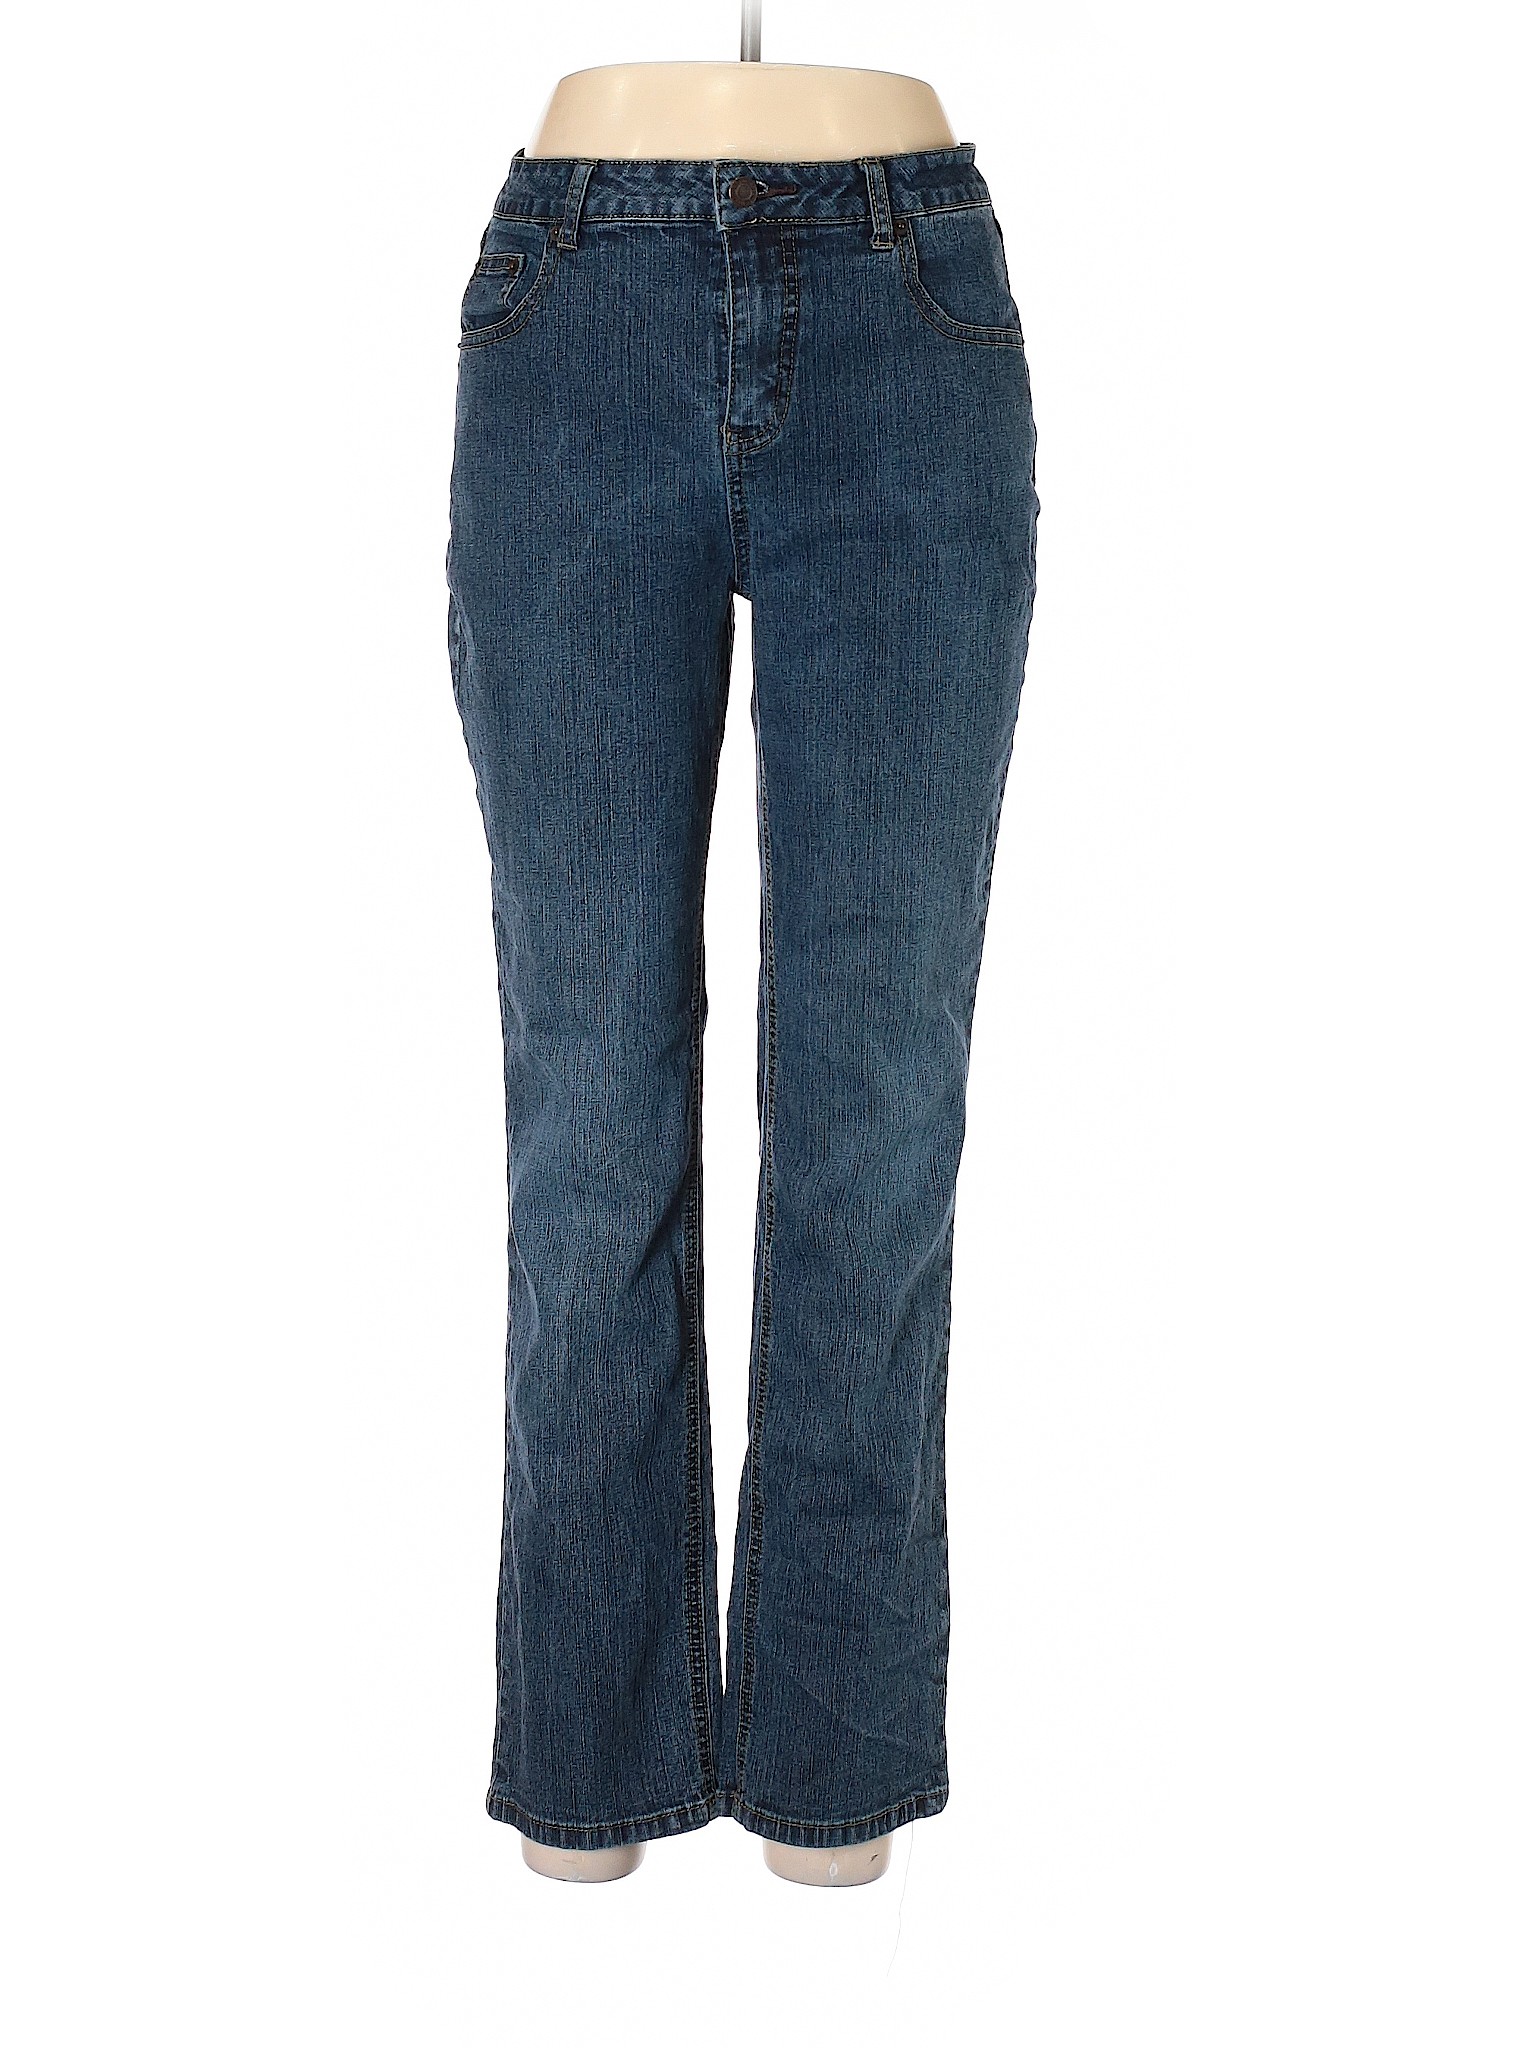 Westport Women Blue Jeans 10 | eBay